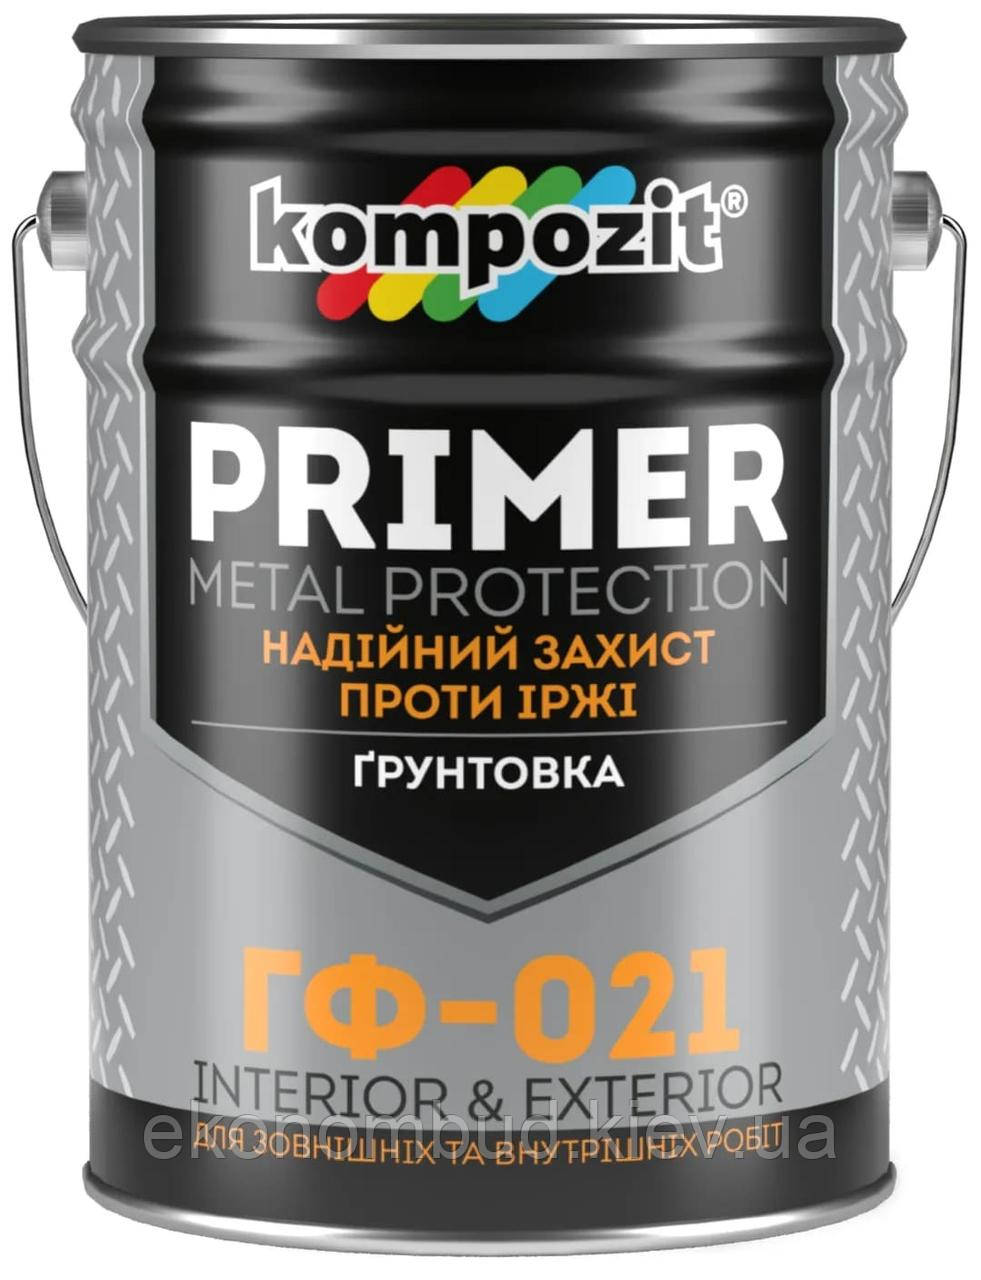 Ґрунтовка ГФ-021 Kompozit® (Колір: Світло-сірий, Фасування: 25 кг)